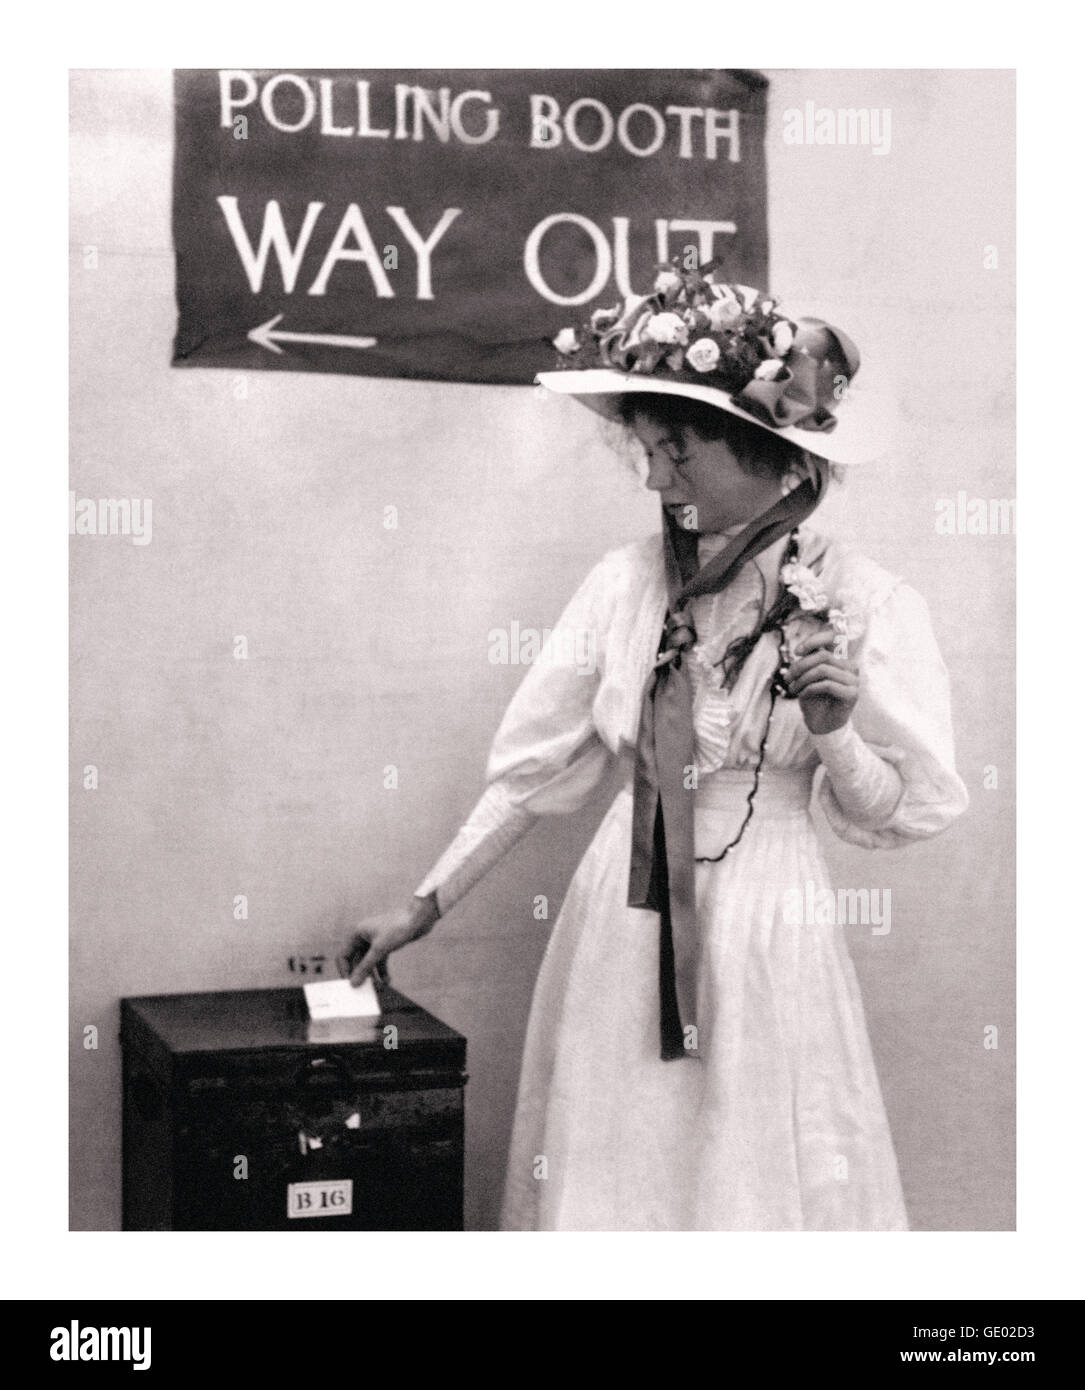 Suffragettenbewegung Christabel Pankhurst in einem britischen Wahlkabinett um 1910. Sie war eine Tochter von Emmeline Pankhurst und eine politische Aktivistin der Suffragetten-Bewegung, die Stimmen für Frauen sicherte. Mitbegründer der sozialen und politischen Frauenunion WSPU Stockfoto